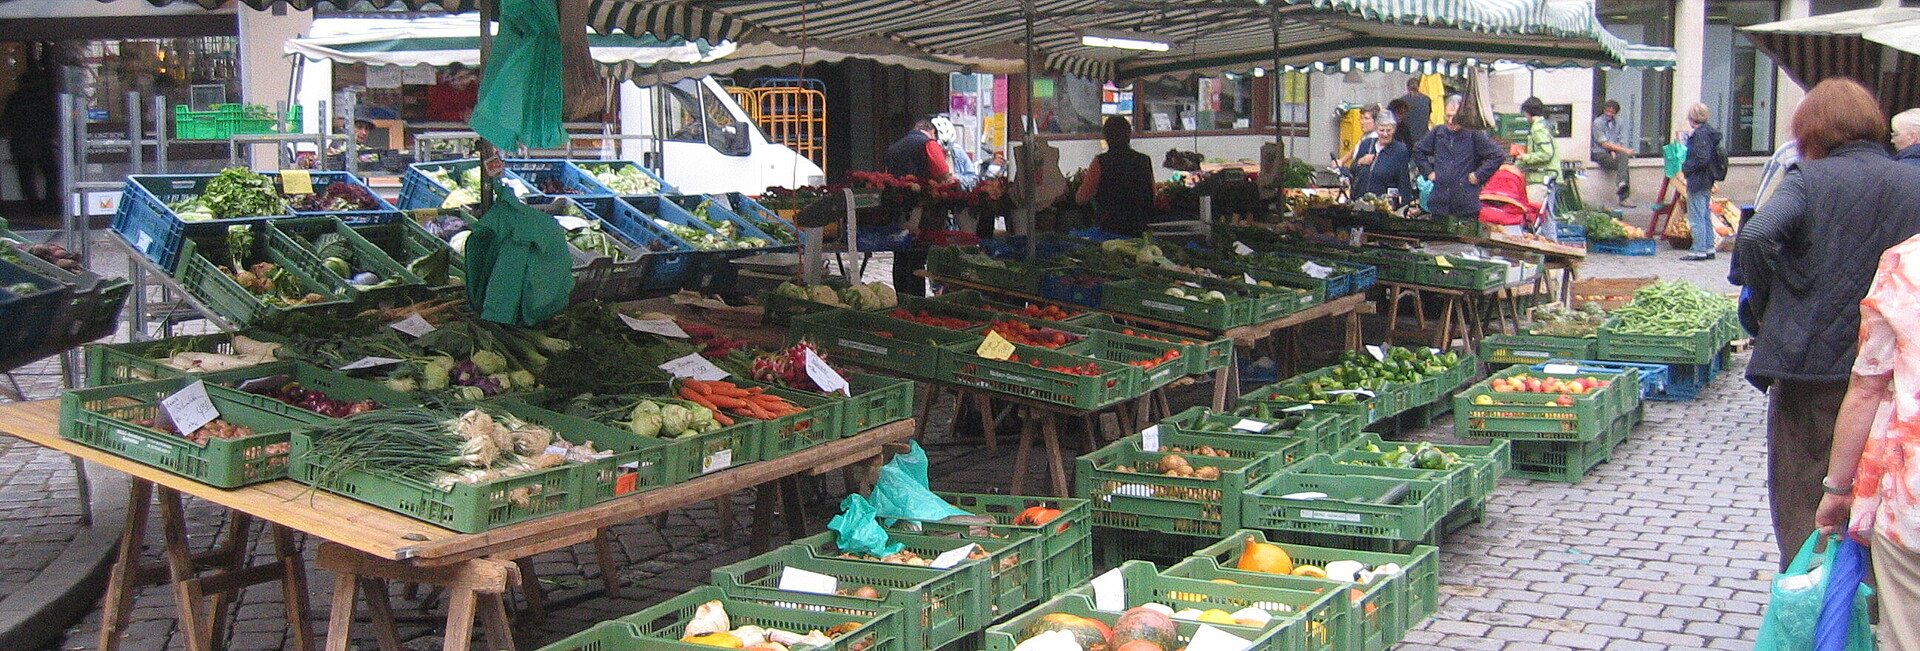 Marktstand in Tübingen mit Gemüse- und Obstangebot.